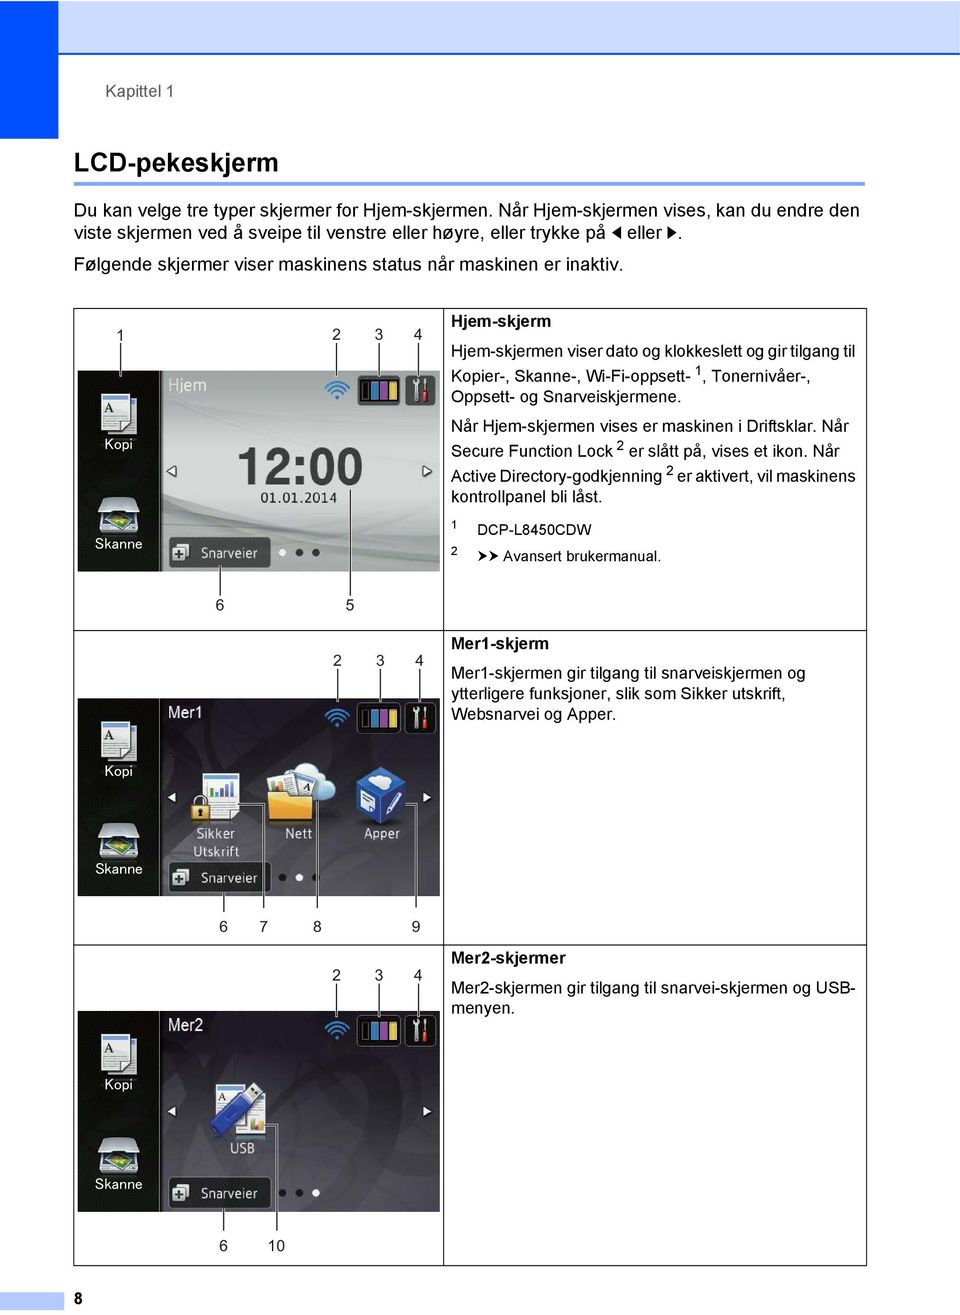 1 2 3 4 Hjem-skjerm Hjem-skjermen viser dato og klokkeslett og gir tilgang til Kopier-, Skanne-, Wi-Fi-oppsett- 1, Tonernivåer-, Oppsett- og Snarveiskjermene.